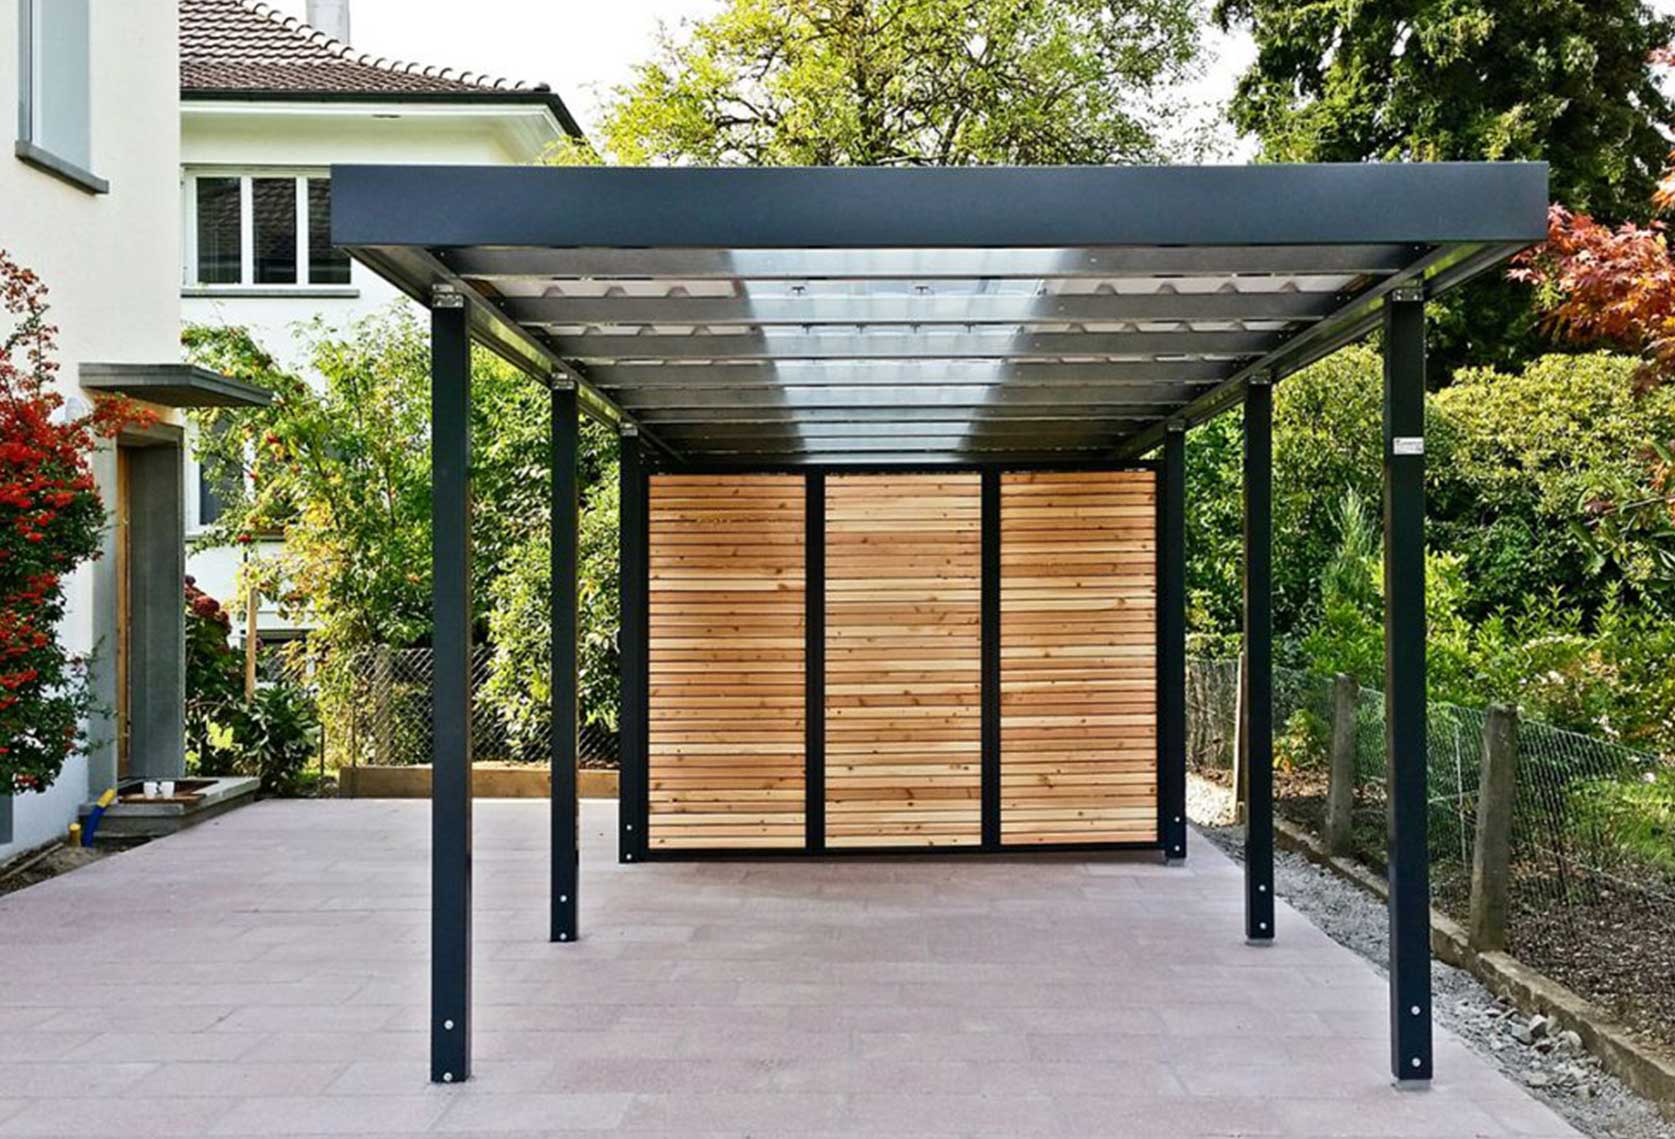 Carport mit Geräteraumeinbau und transparenter Dacheindeckung.